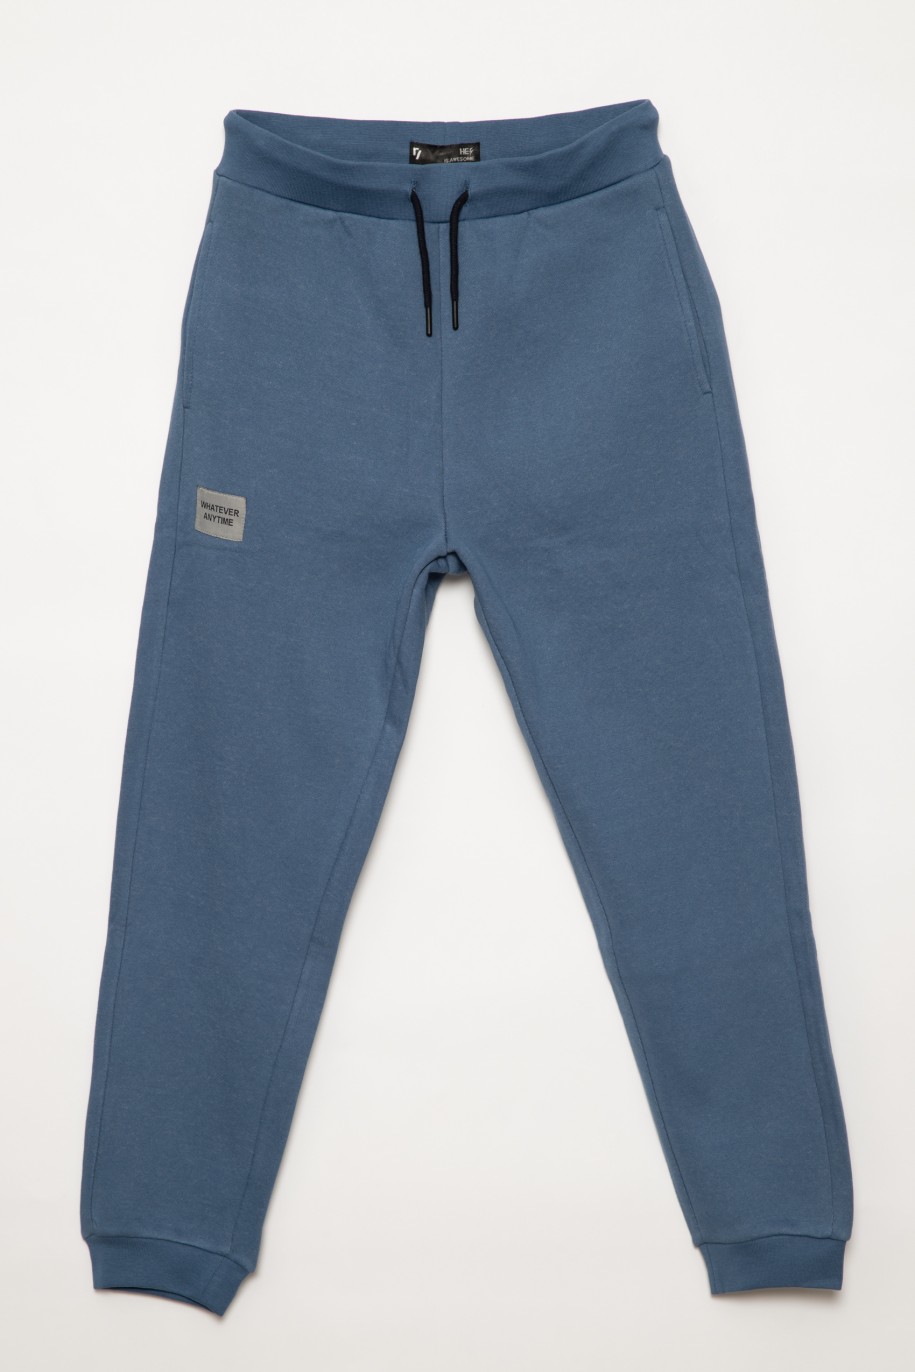 Niebieskie gładkie spodnie dresowe dla chłopaka - 31678